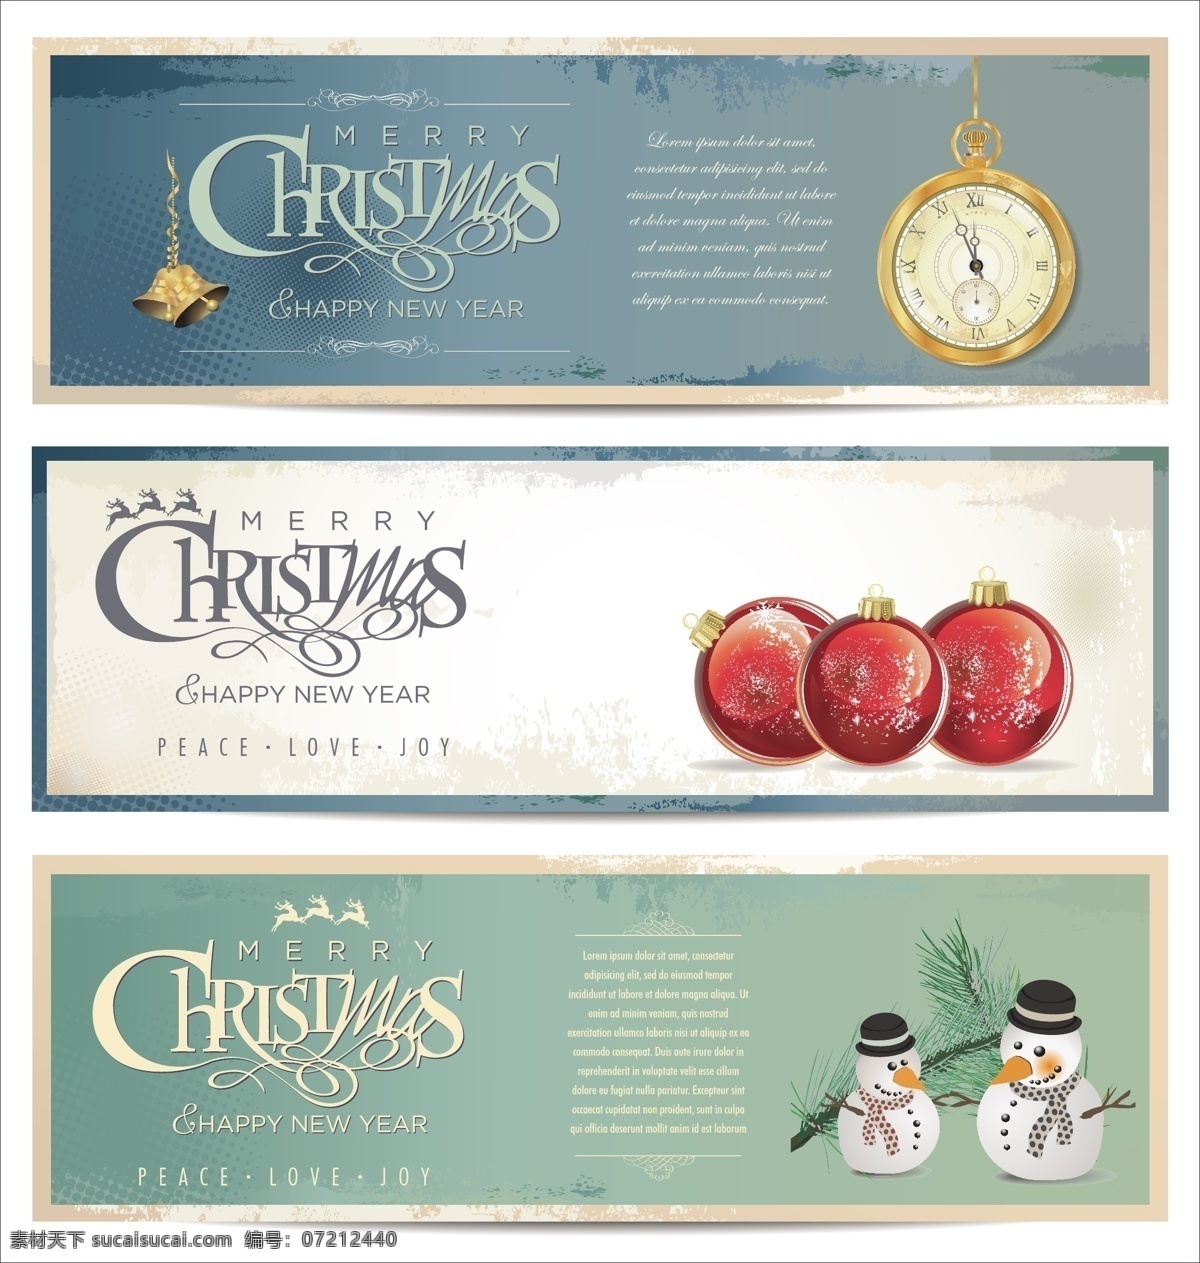 创意 圣诞 祝福语 节日 标签 祝福 矢量素材 设计素材 背景素材